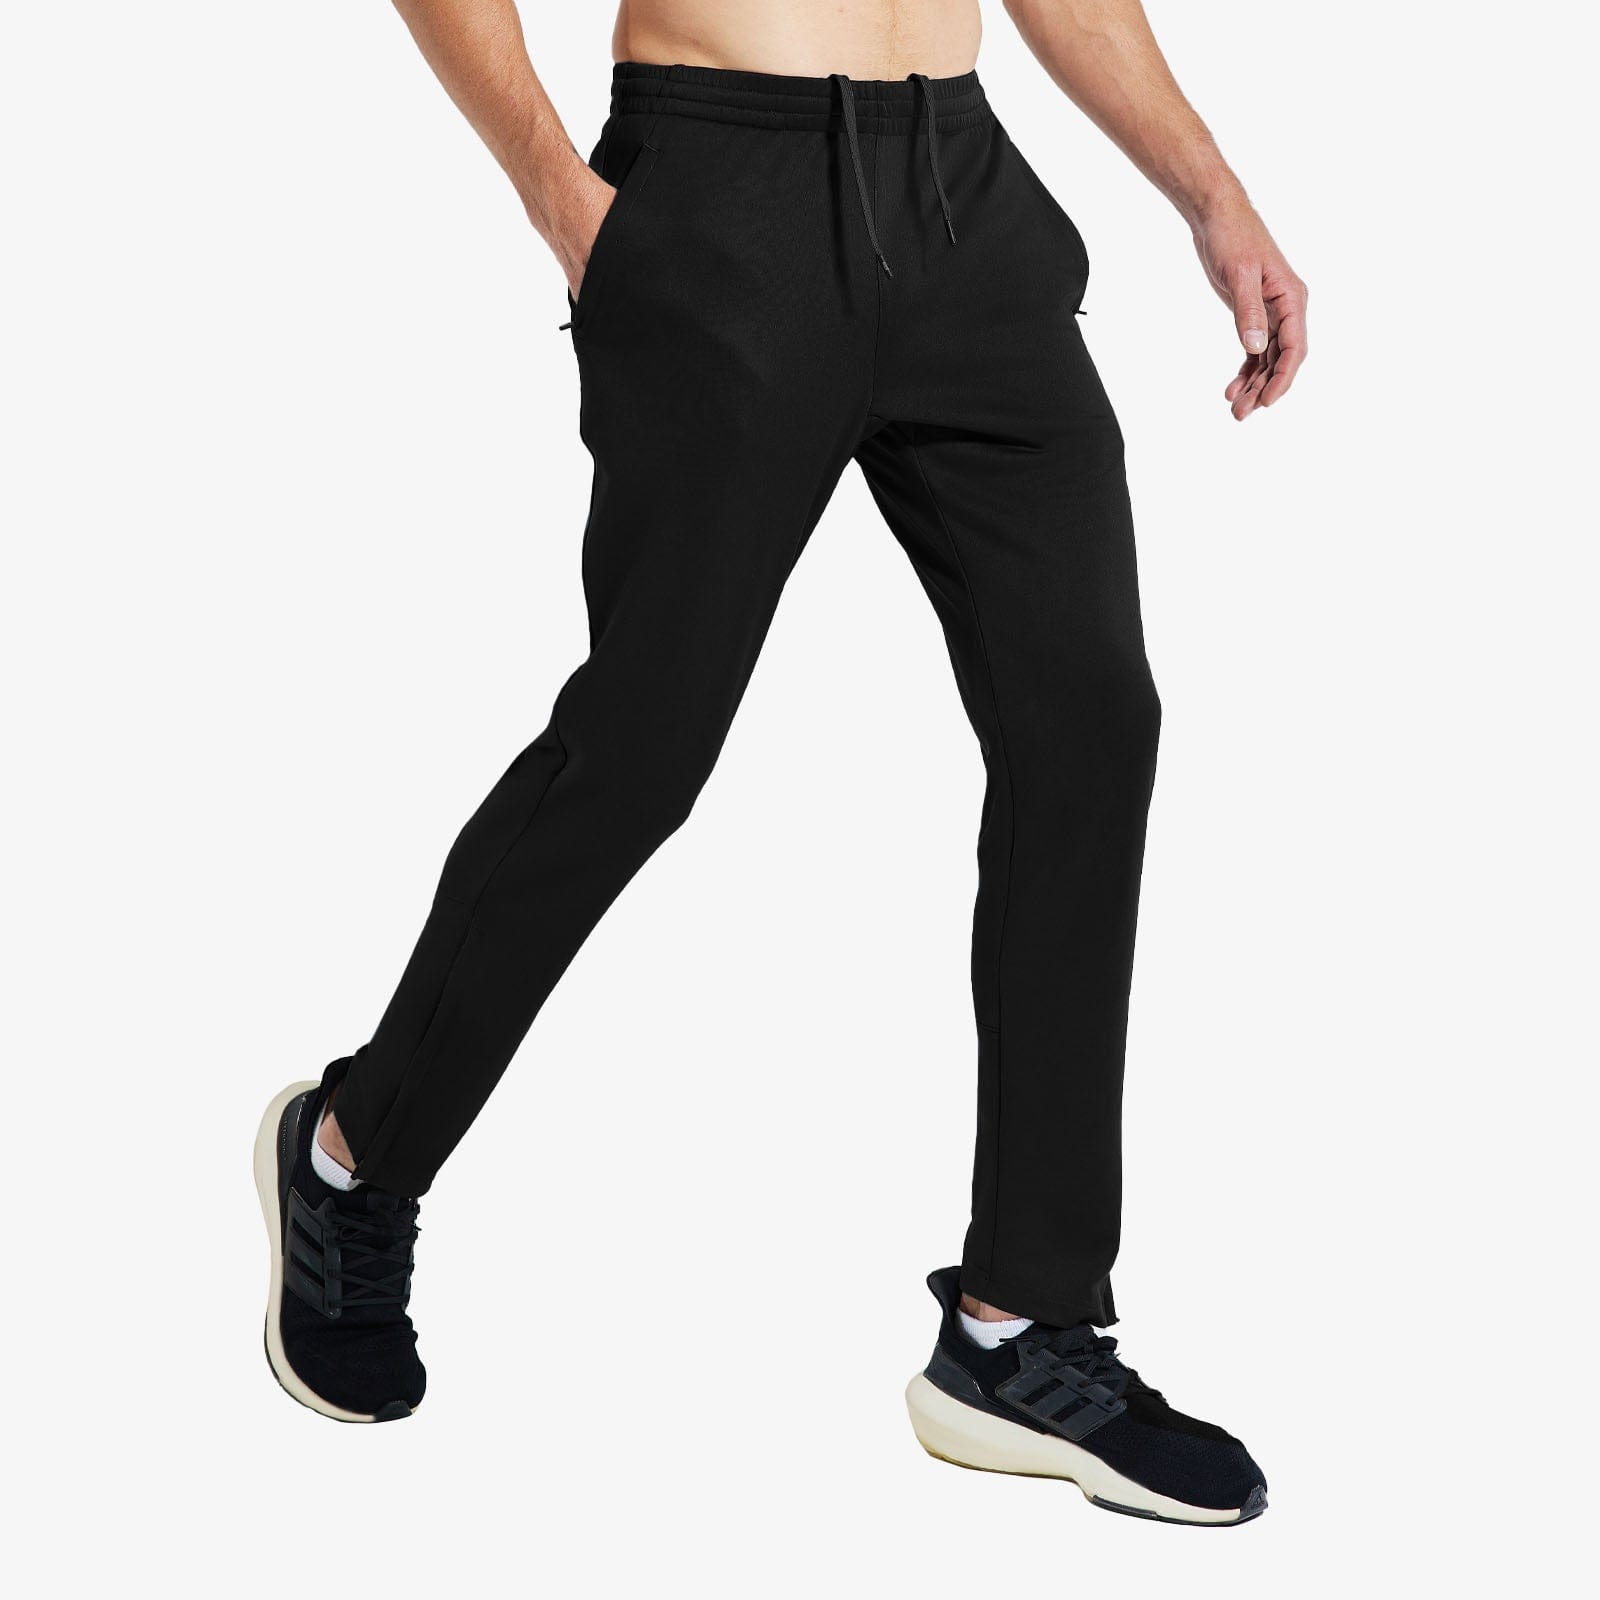 Men’s Sweatpants with Pockets Athletic Track Joggers Men Train Pants Black / S MIER